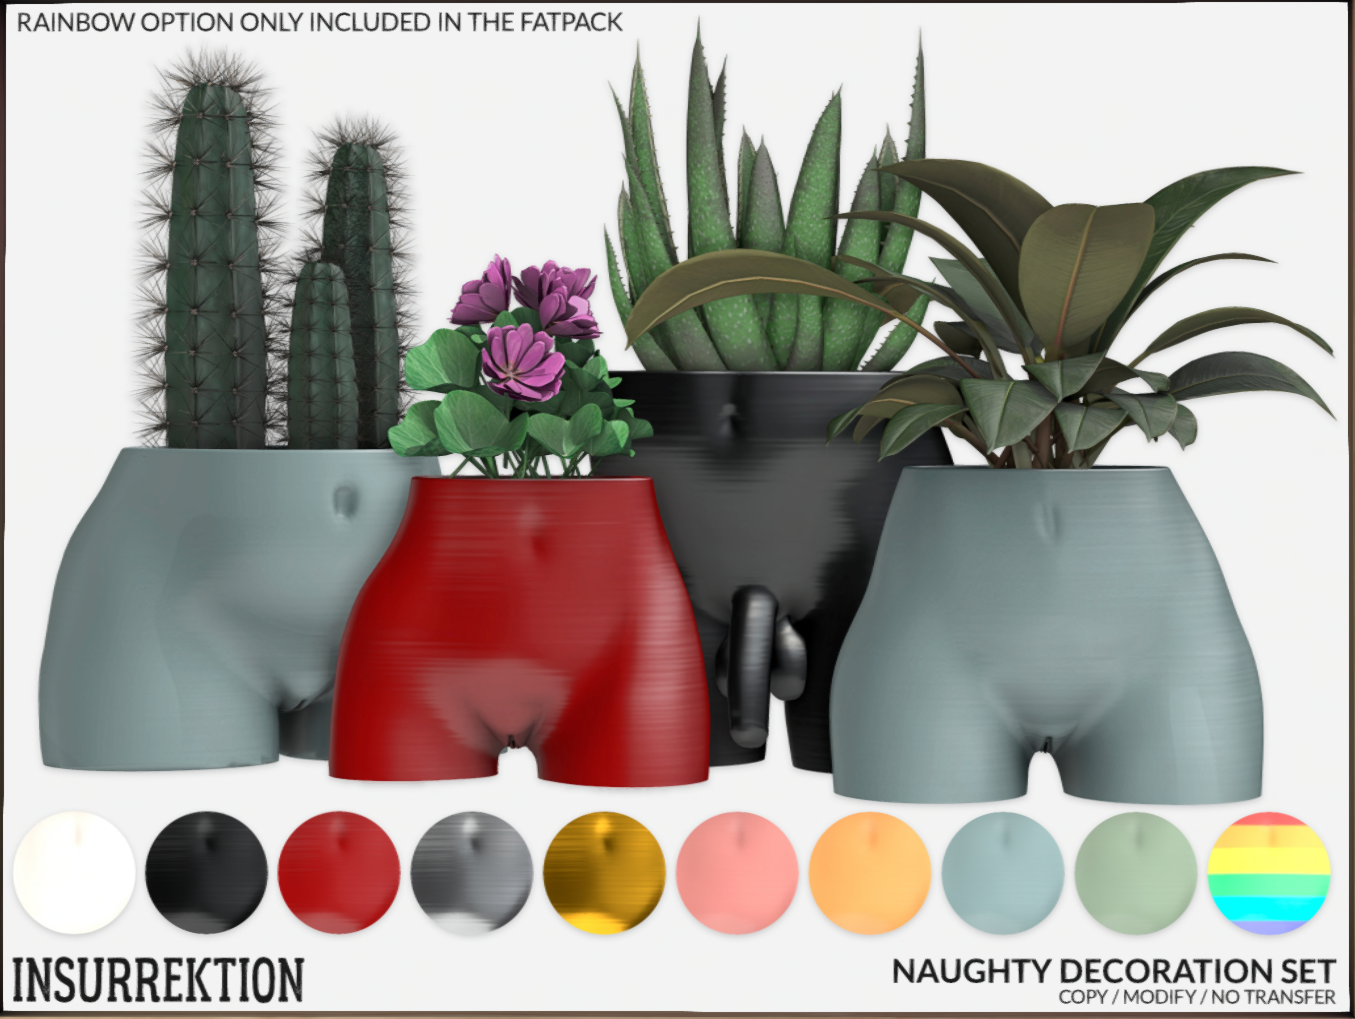 InsurreKtion – Naughty Decoration Set & Naughty Candle Set